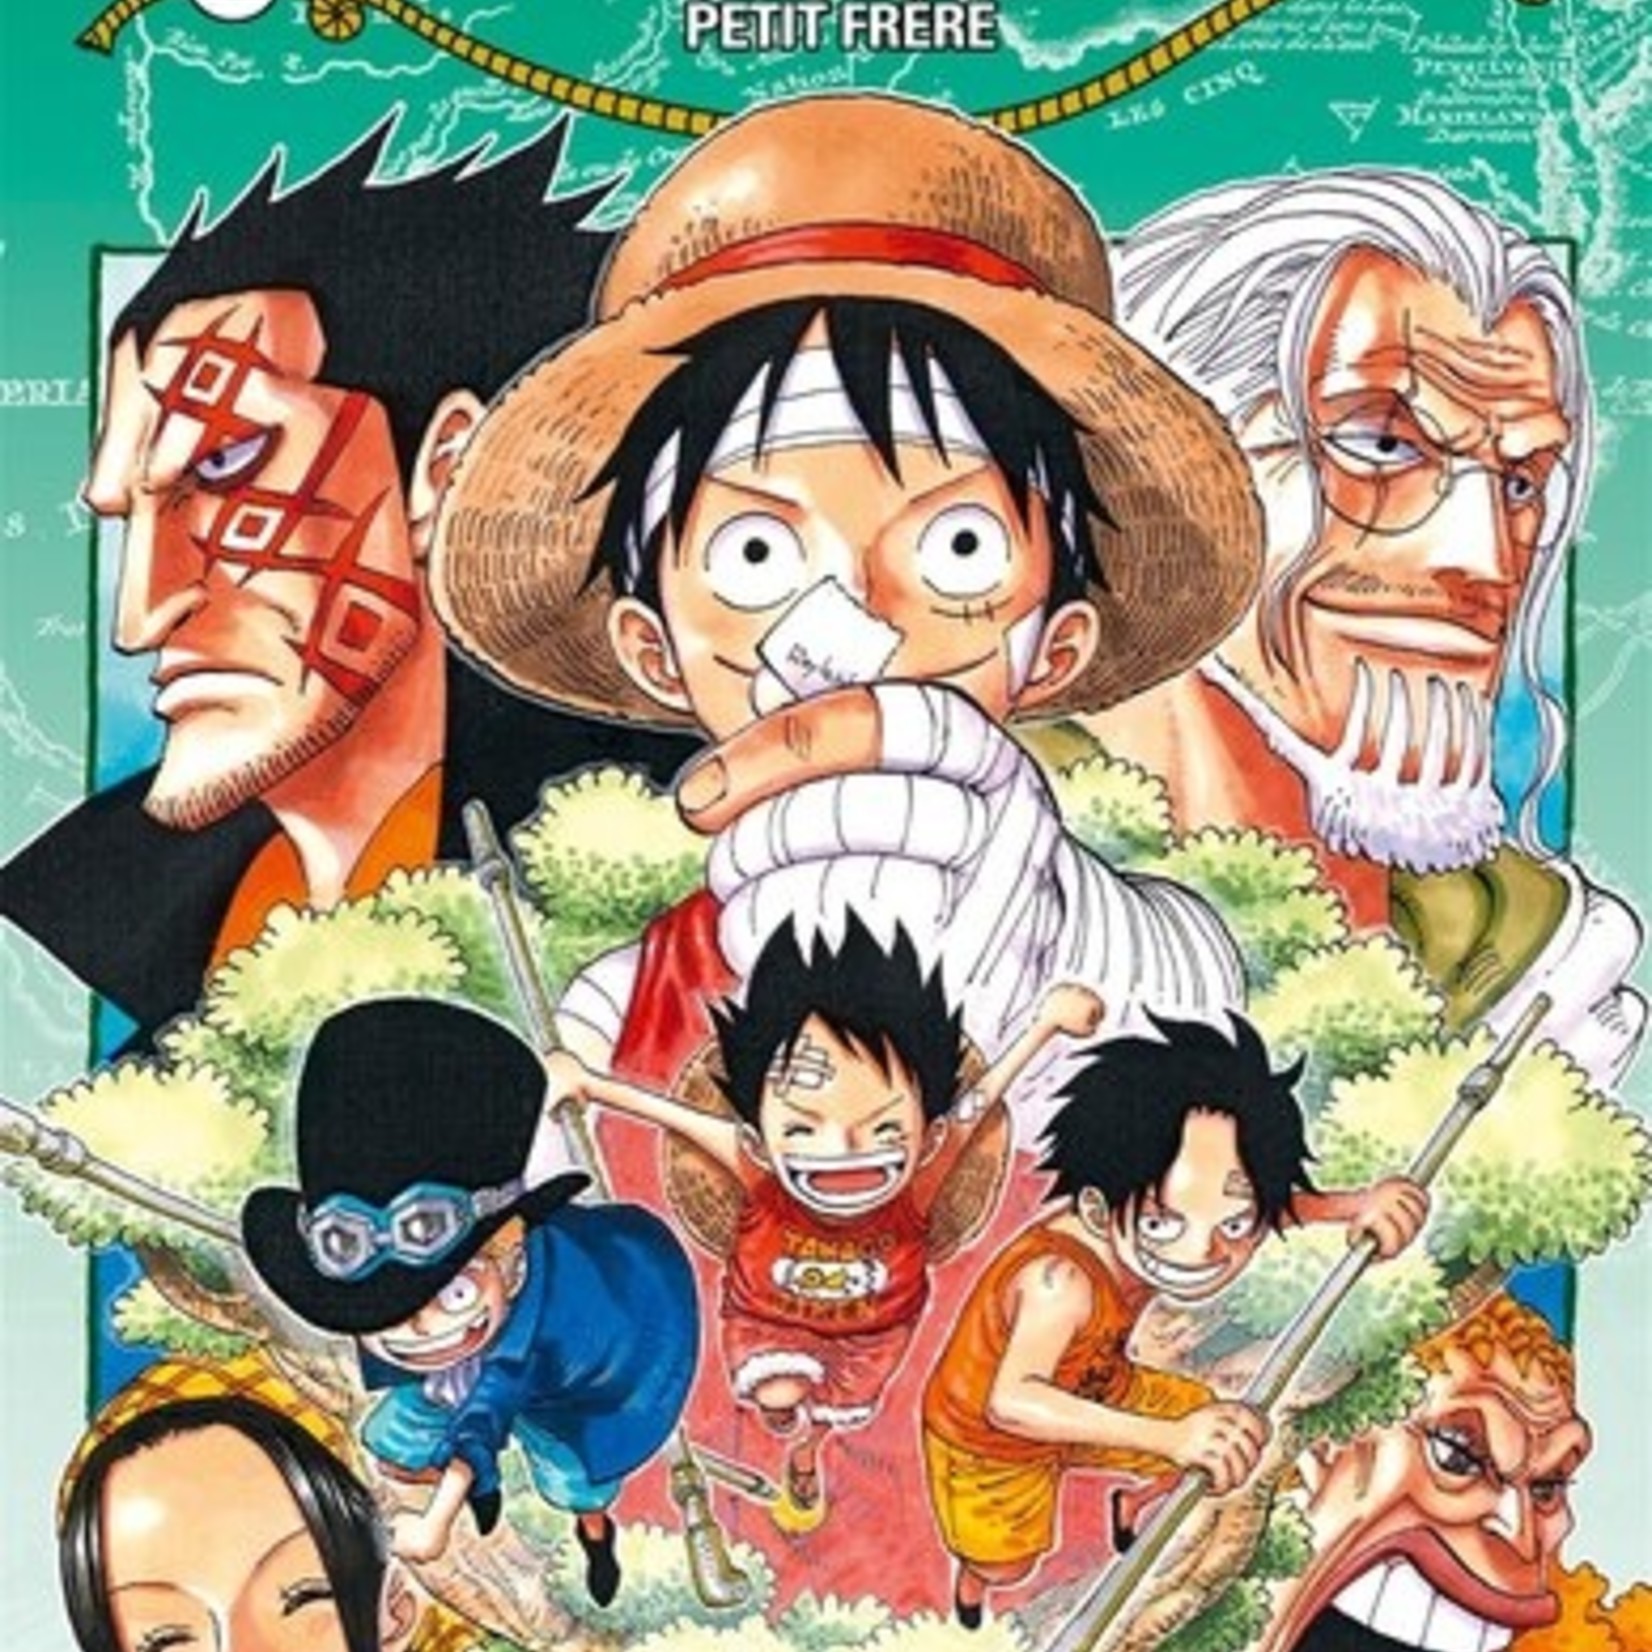 Glénat Manga - One Piece Tome 060